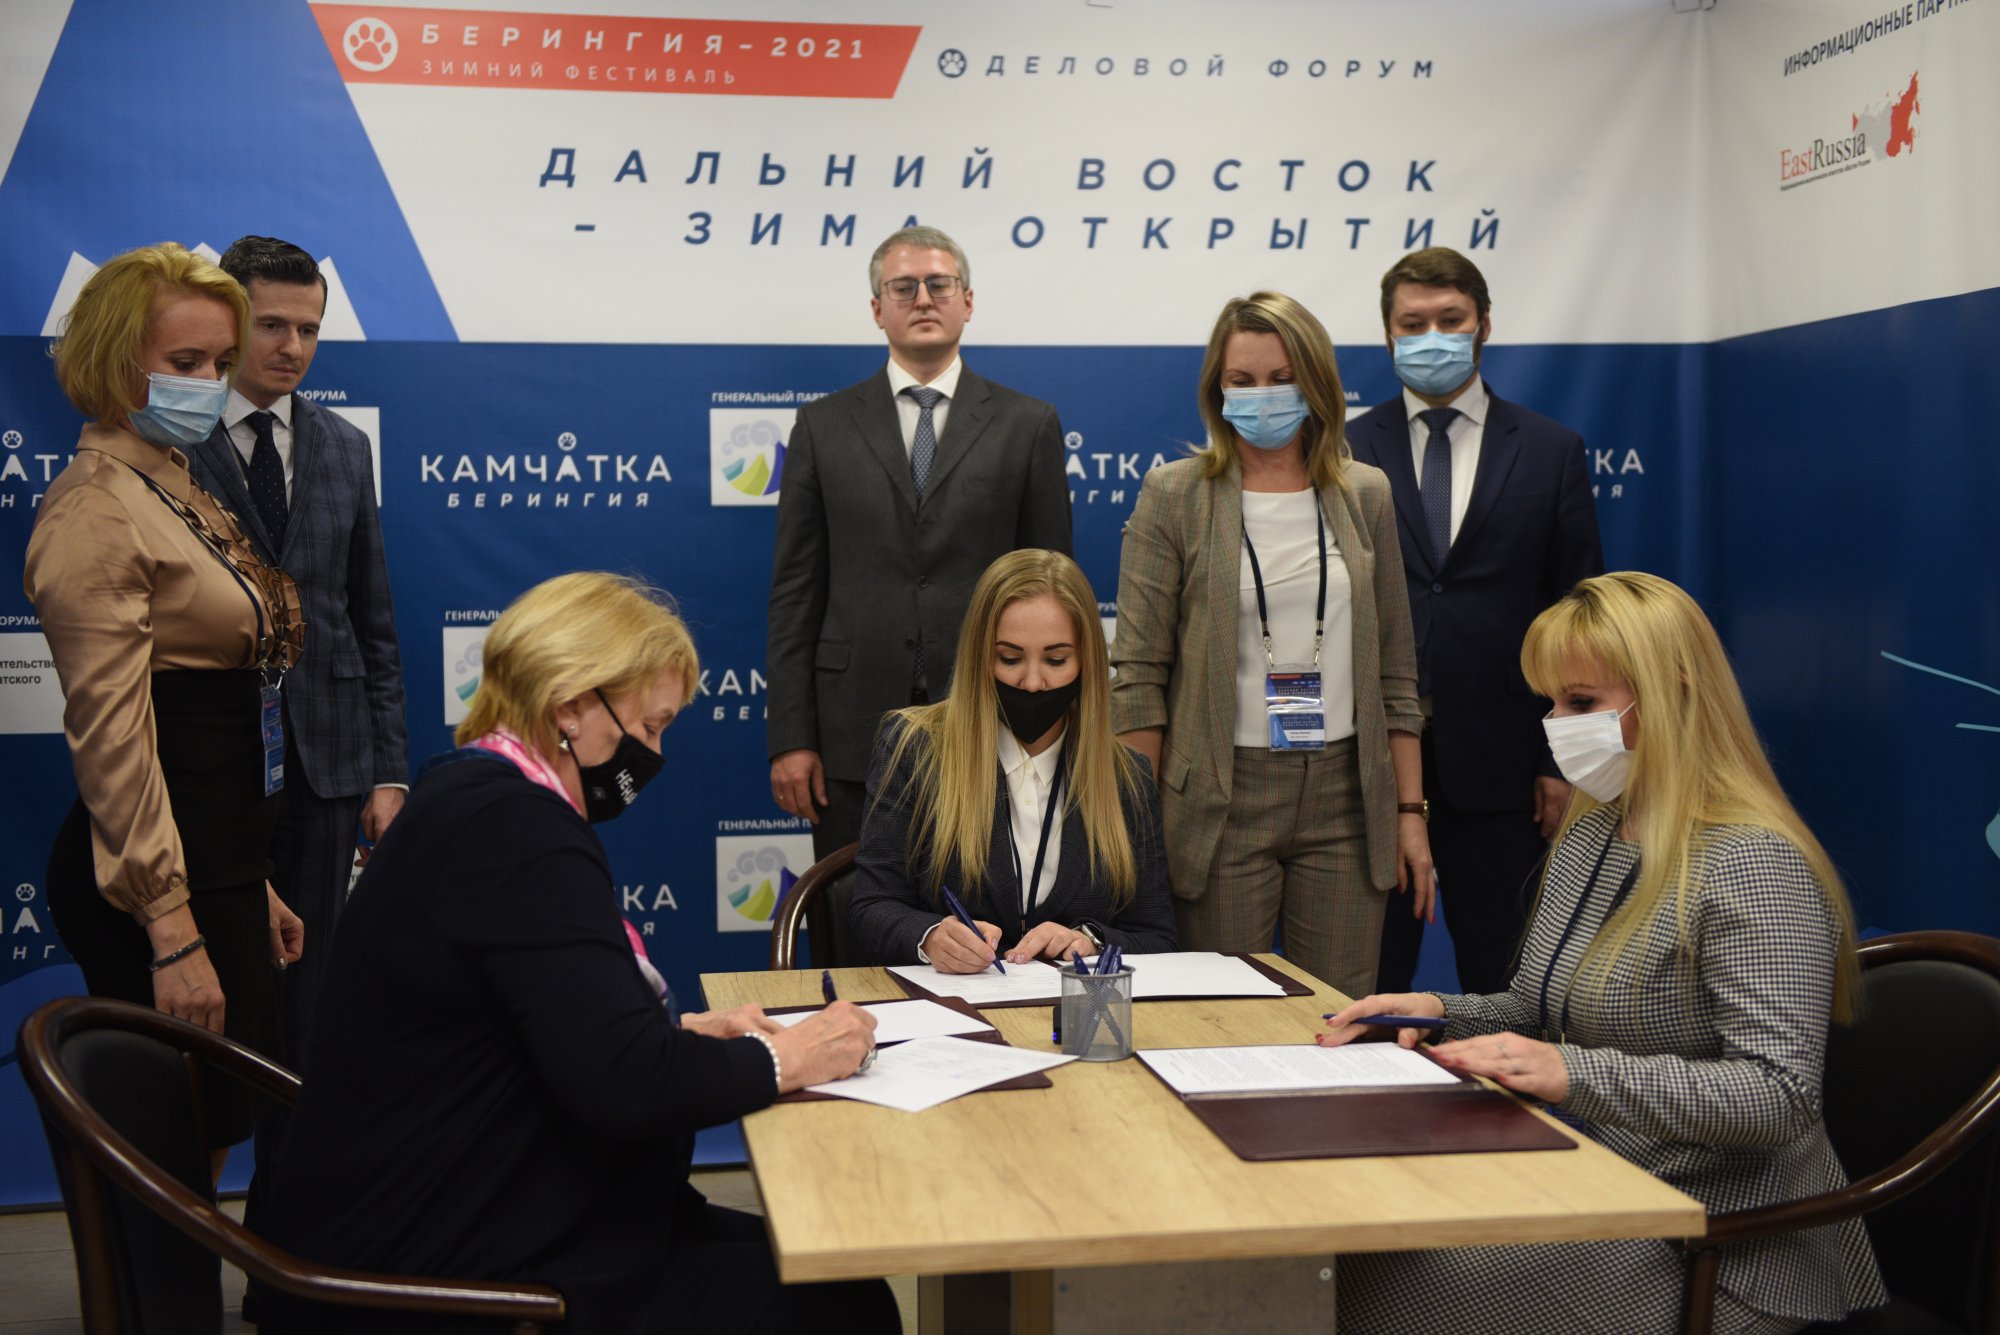 Подписаны соглашения о сотрудничестве в сфере развития конгрессно-выставочной индустрии и делового туризма (MICE) в Камчатском крае